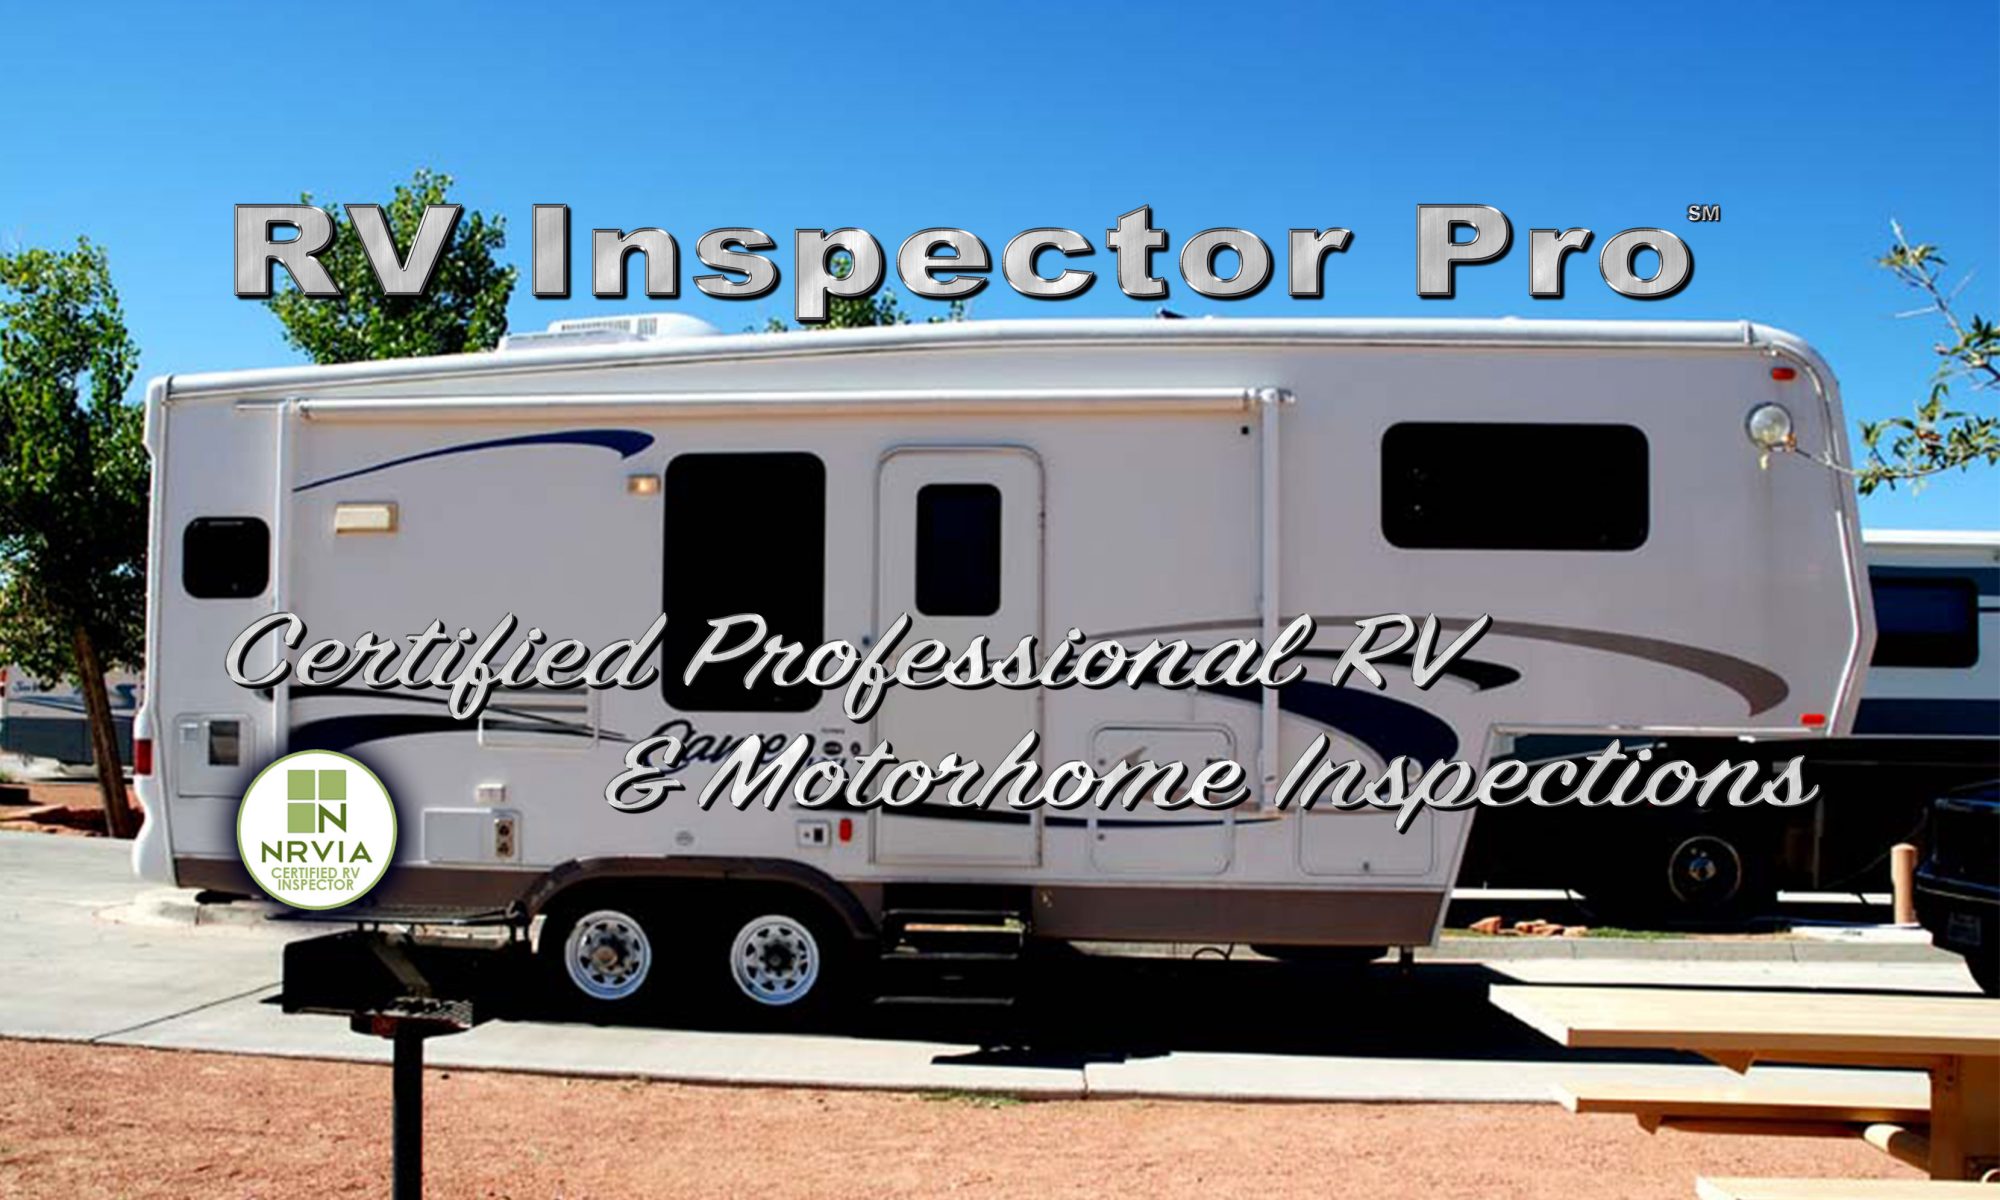 RV Inspector Pro logo over Fifth Wheel RV